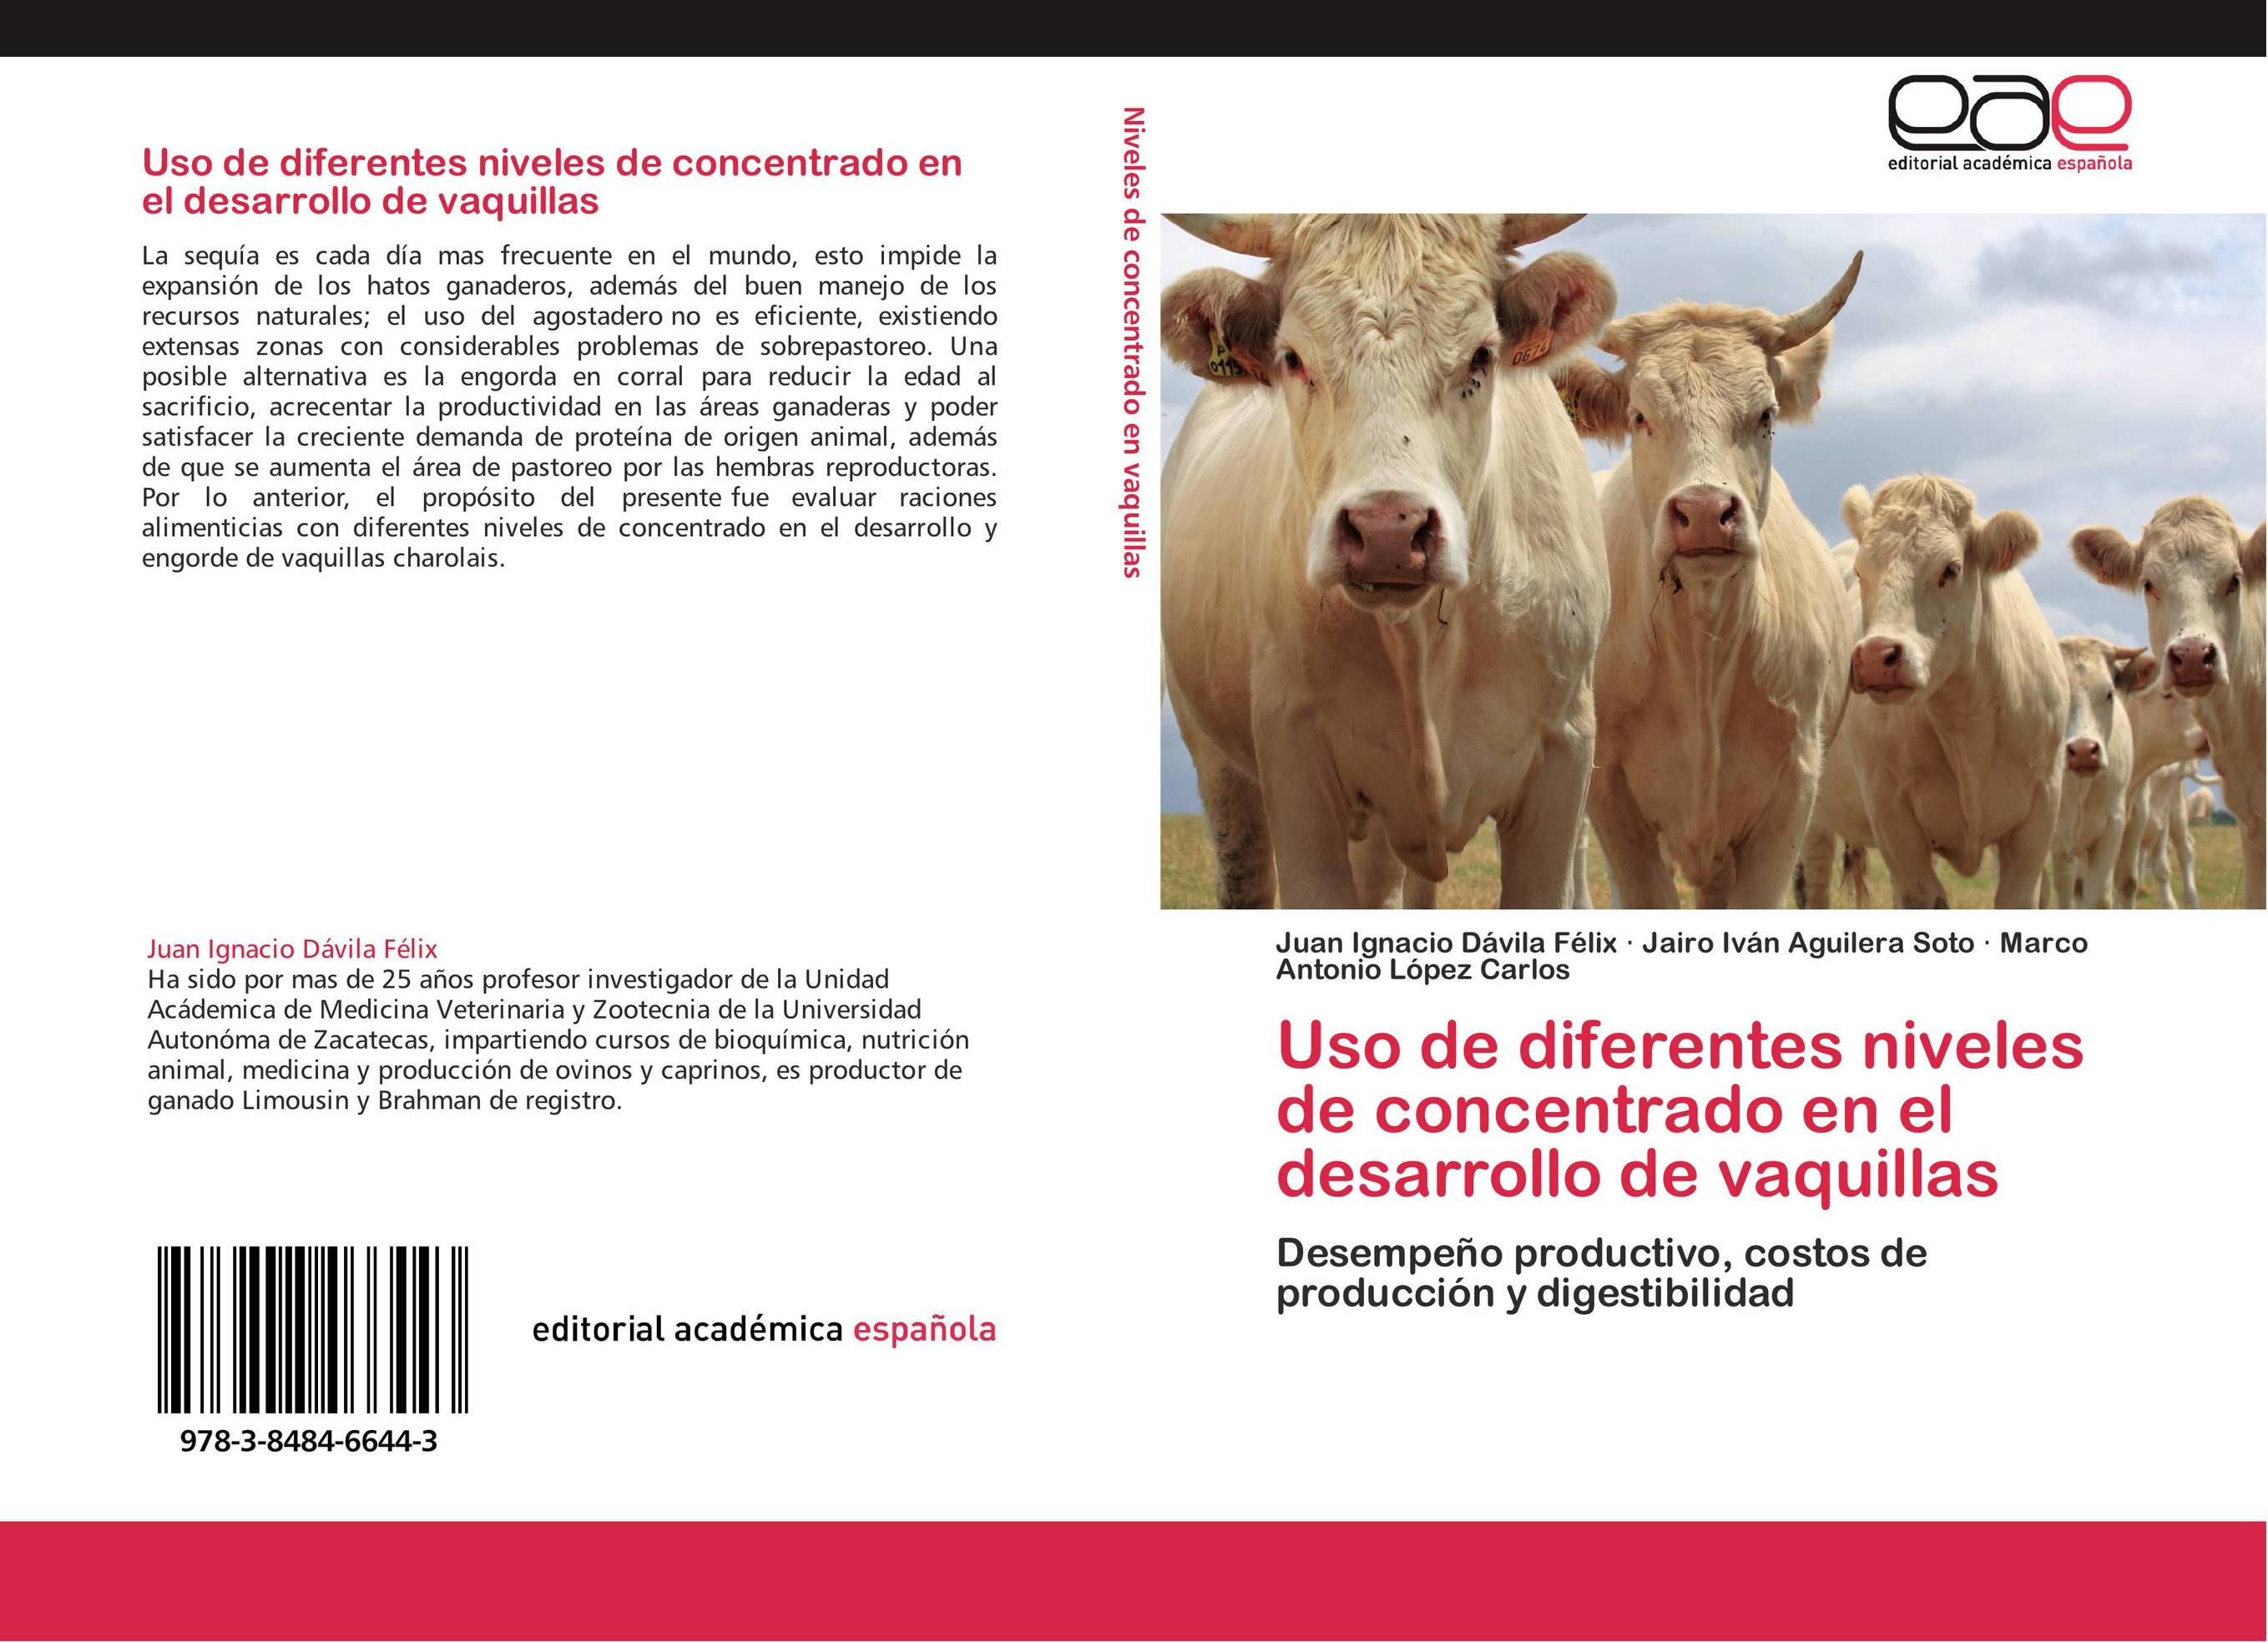 Uso de diferentes niveles de concentrado en el desarrollo de vaquillas